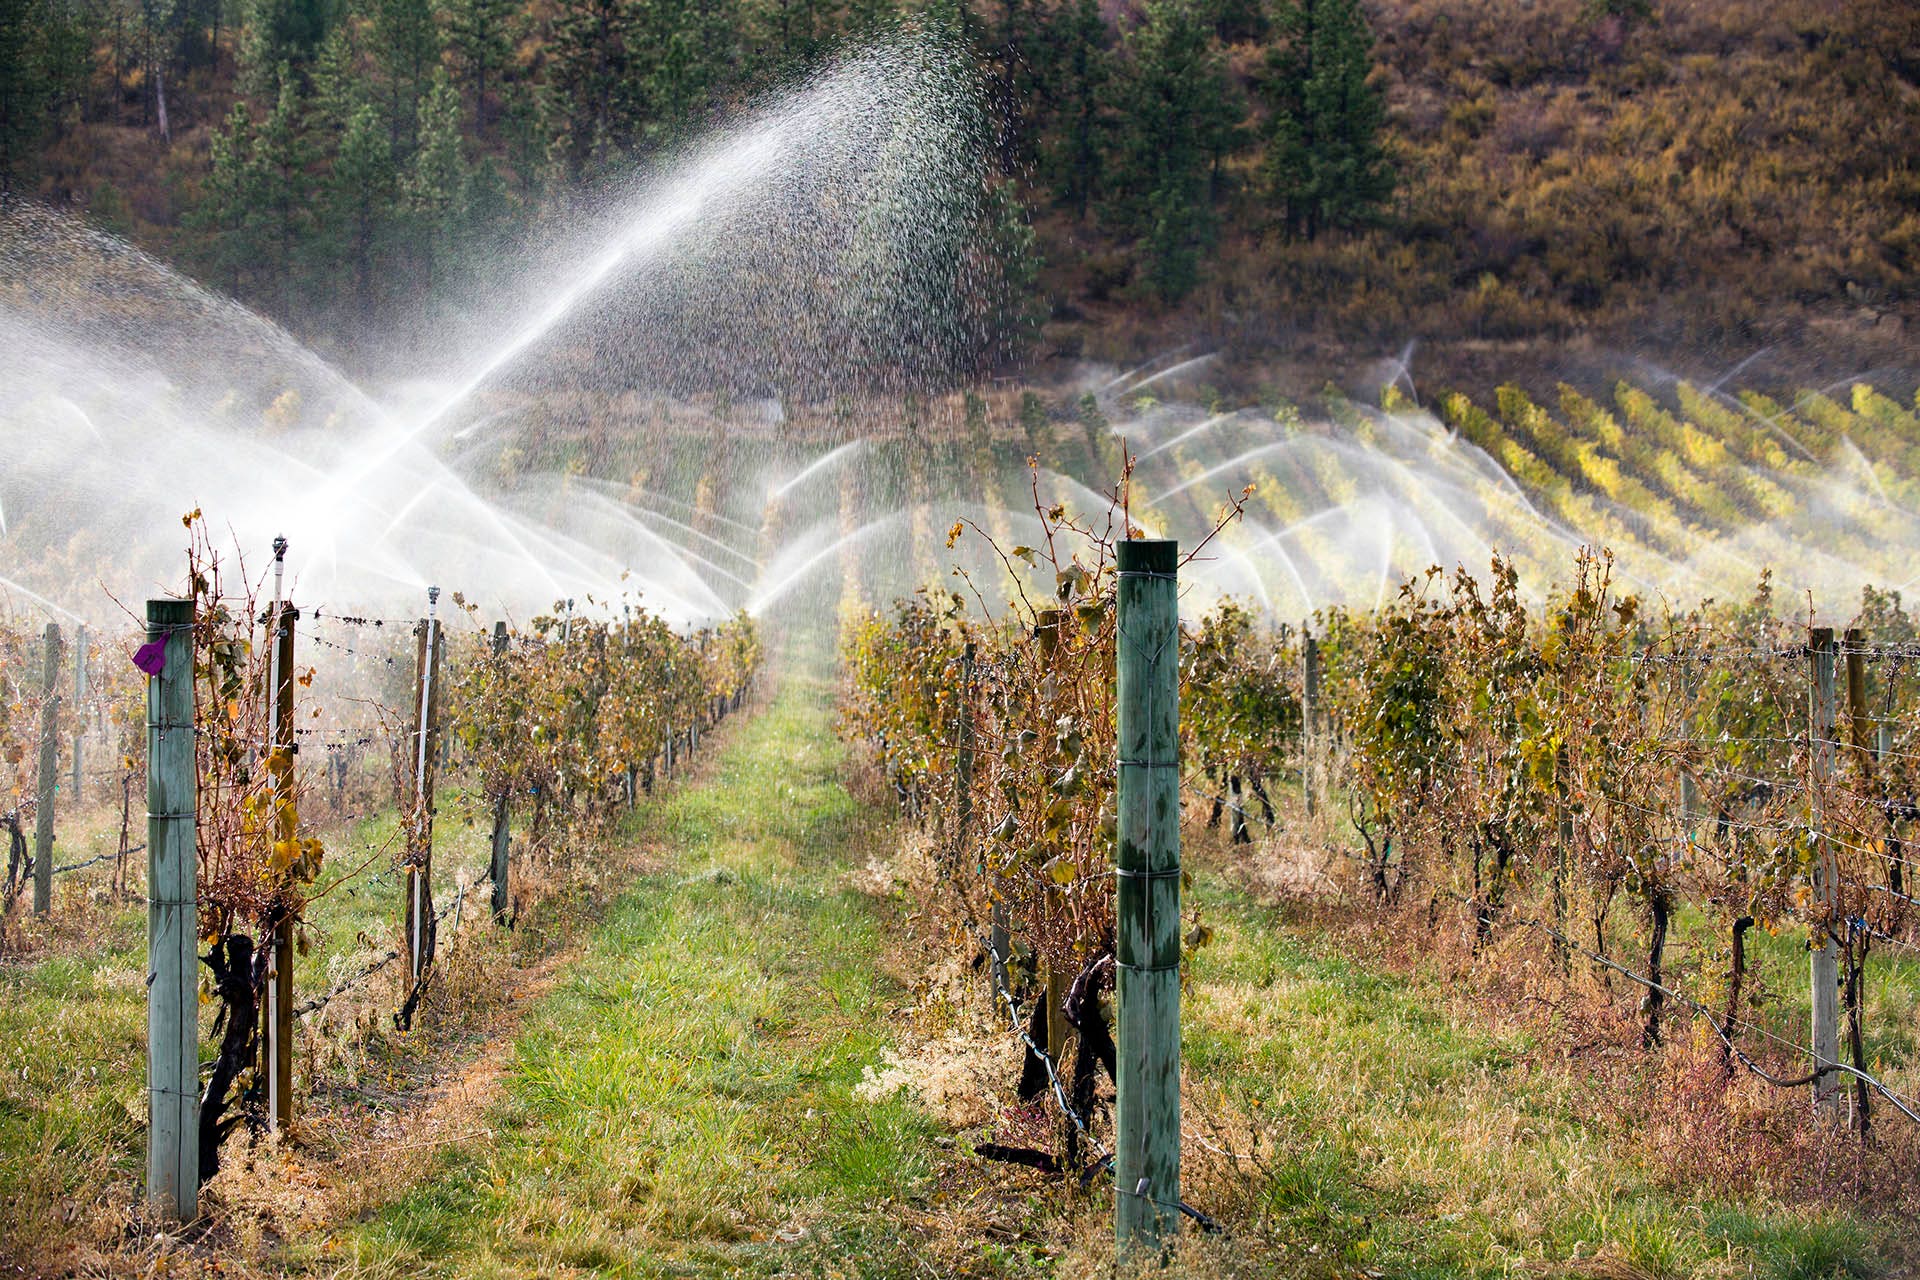 Overhead sprinklers irrigation